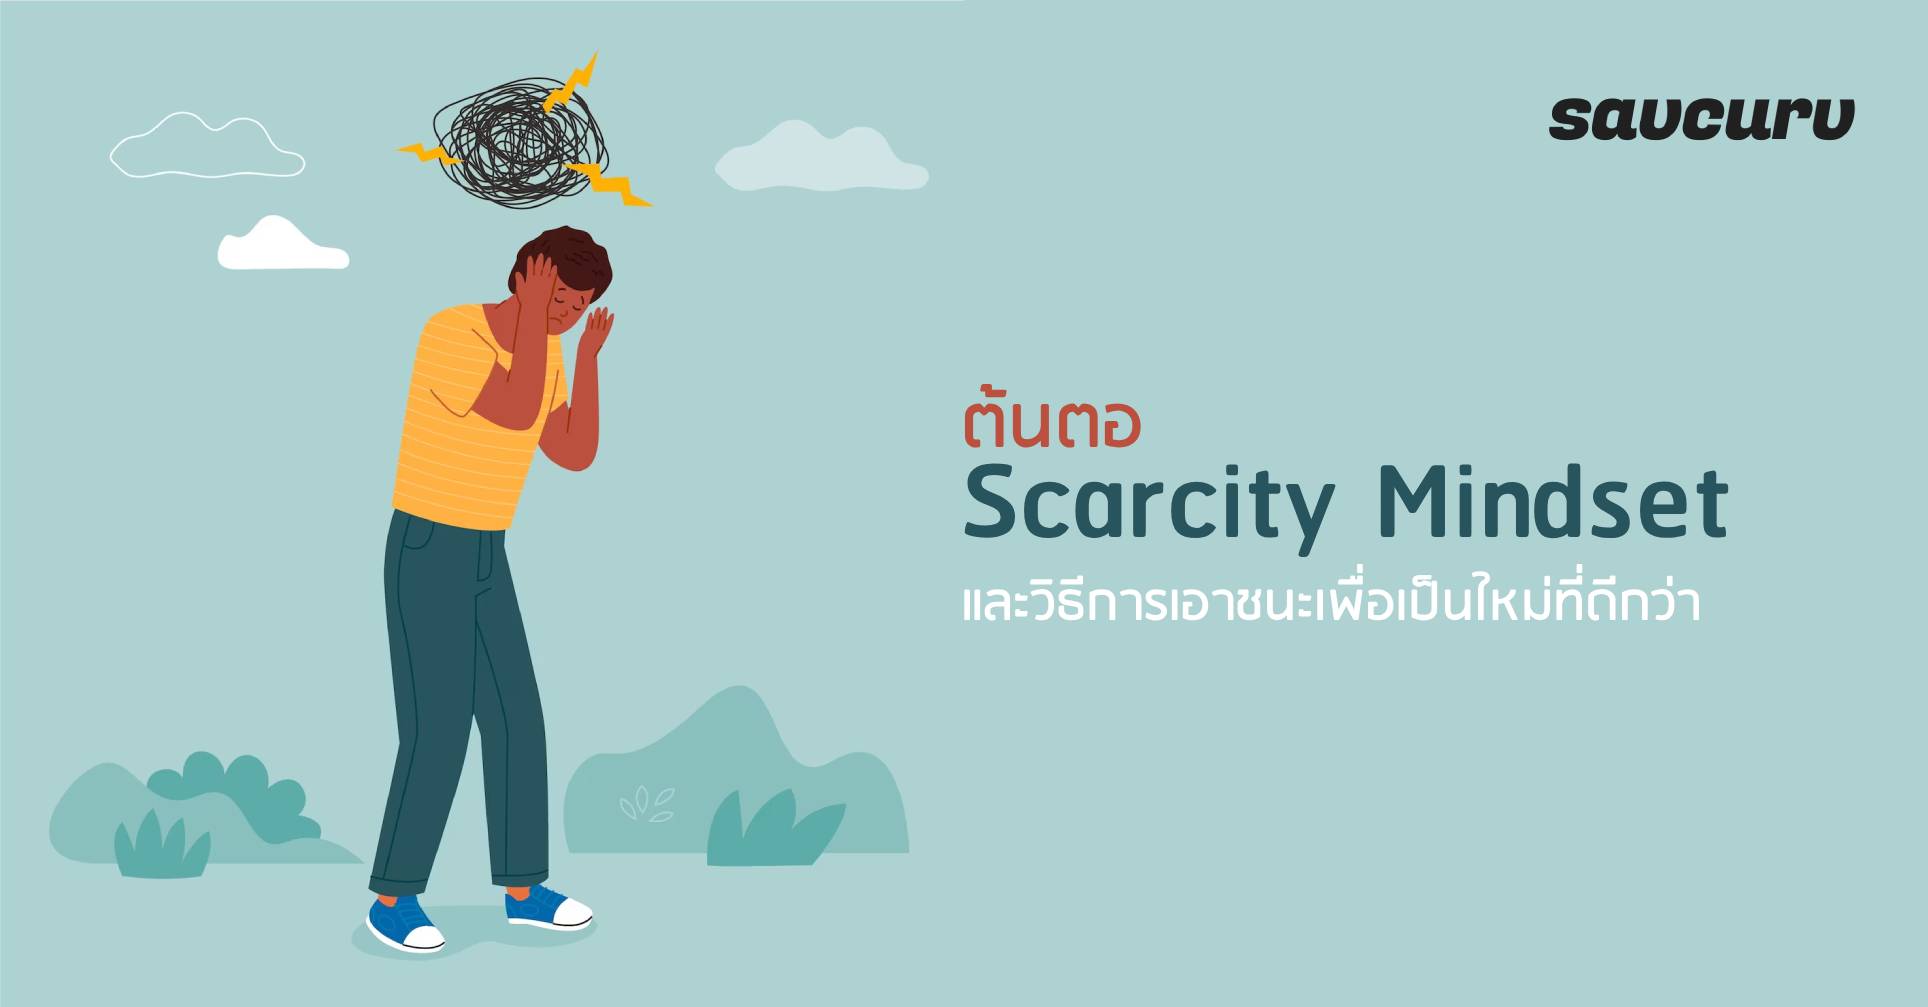 ต้นตอ Scarcity Mindset และวิธีการเอาชนะเพื่อเป็นใหม่ที่ดีกว่า